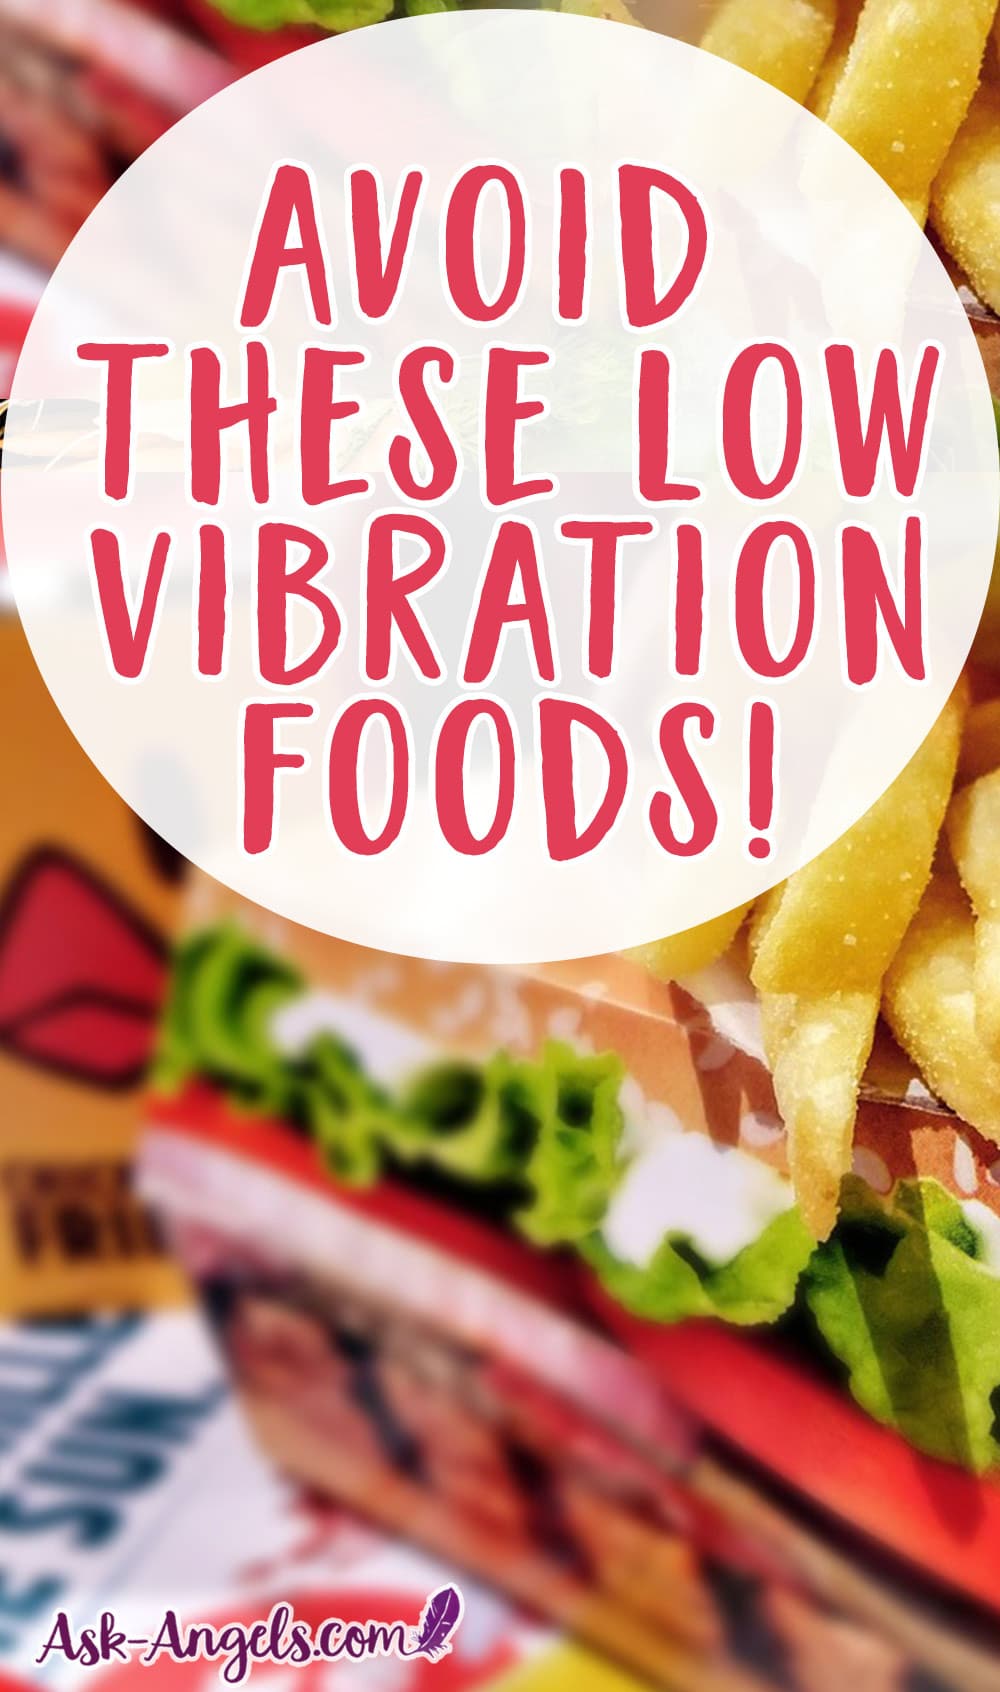 Low Vibration Foods